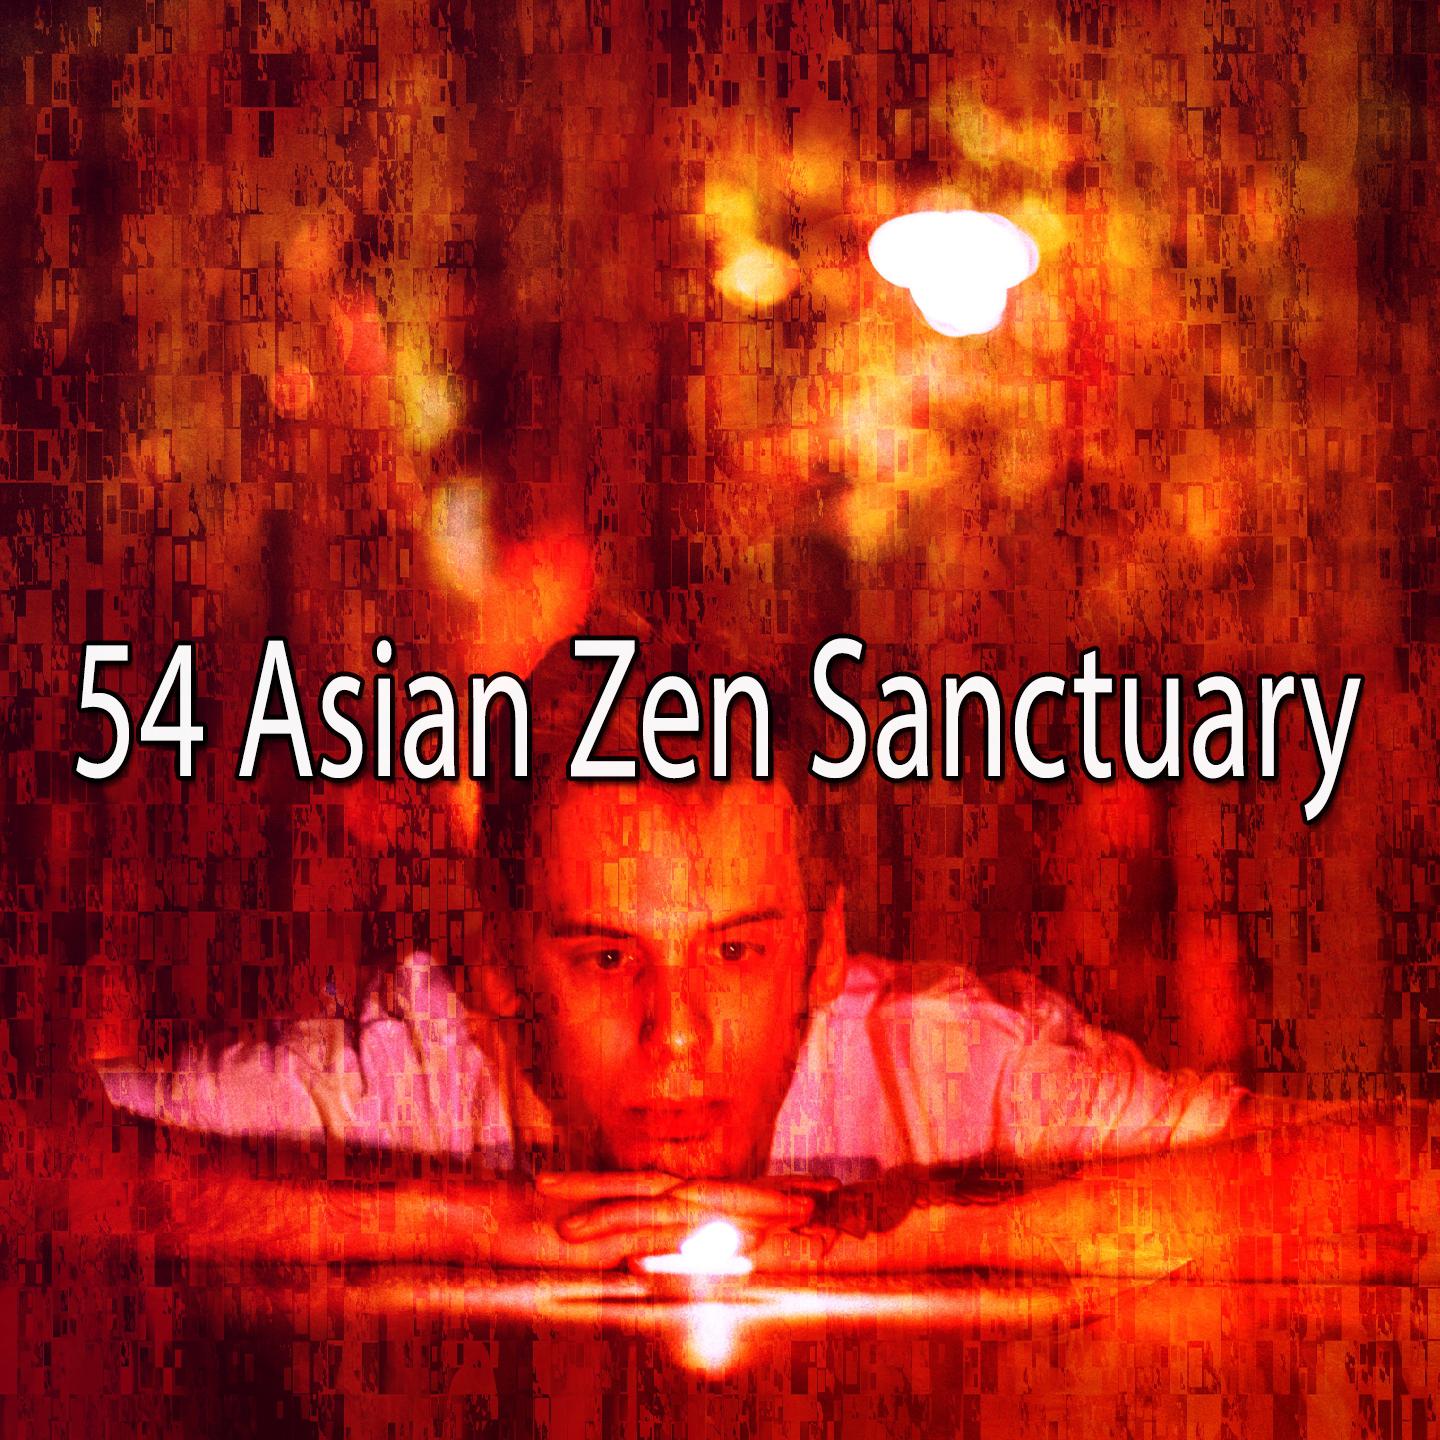 54 Asian Zen Sanctuary